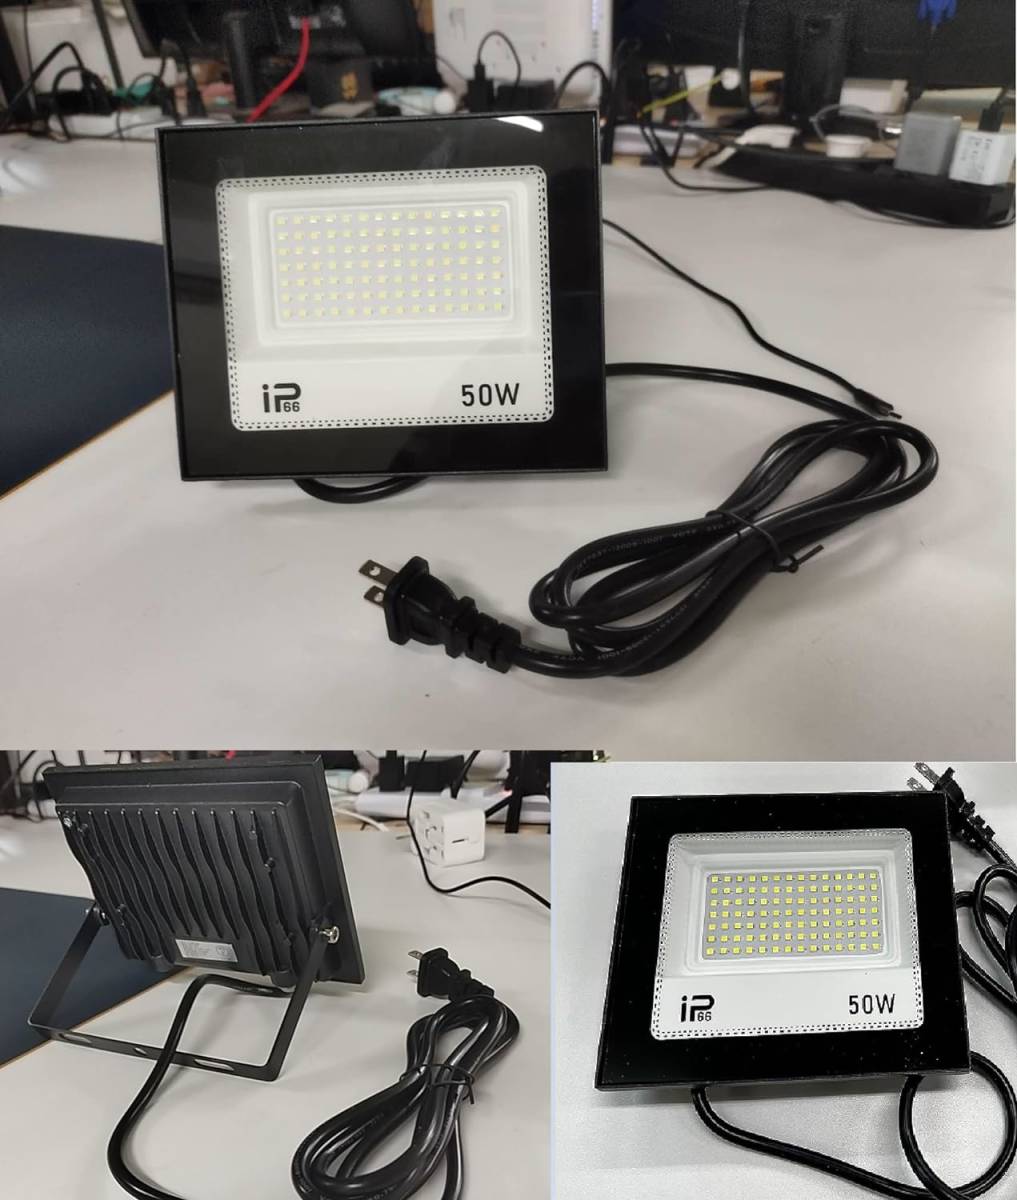  LED 投光器 50W IP66防水 作業灯 8000LM 800W相当フラッドライト 省エネ 高輝度 アース付きプラグ PSE適合 1.8Mコード _画像2